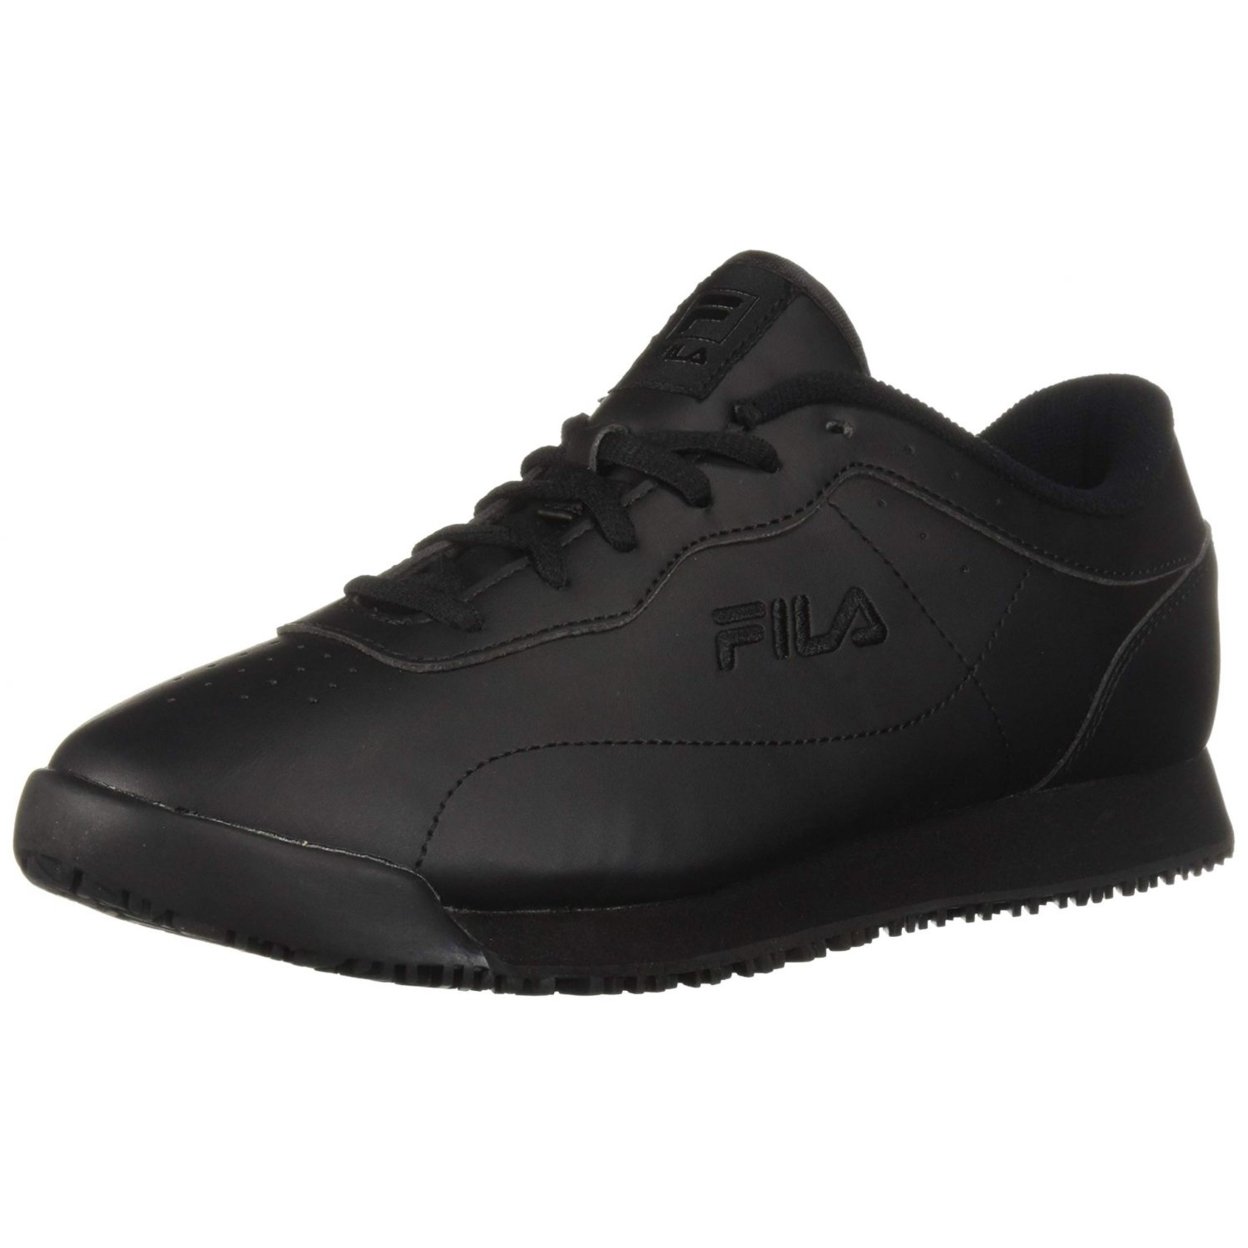 Fila Memory Viable Sr Wide Womens Shoes Size 10, Color: Black 0 BLK/BLK/BLK - Black, 6.5